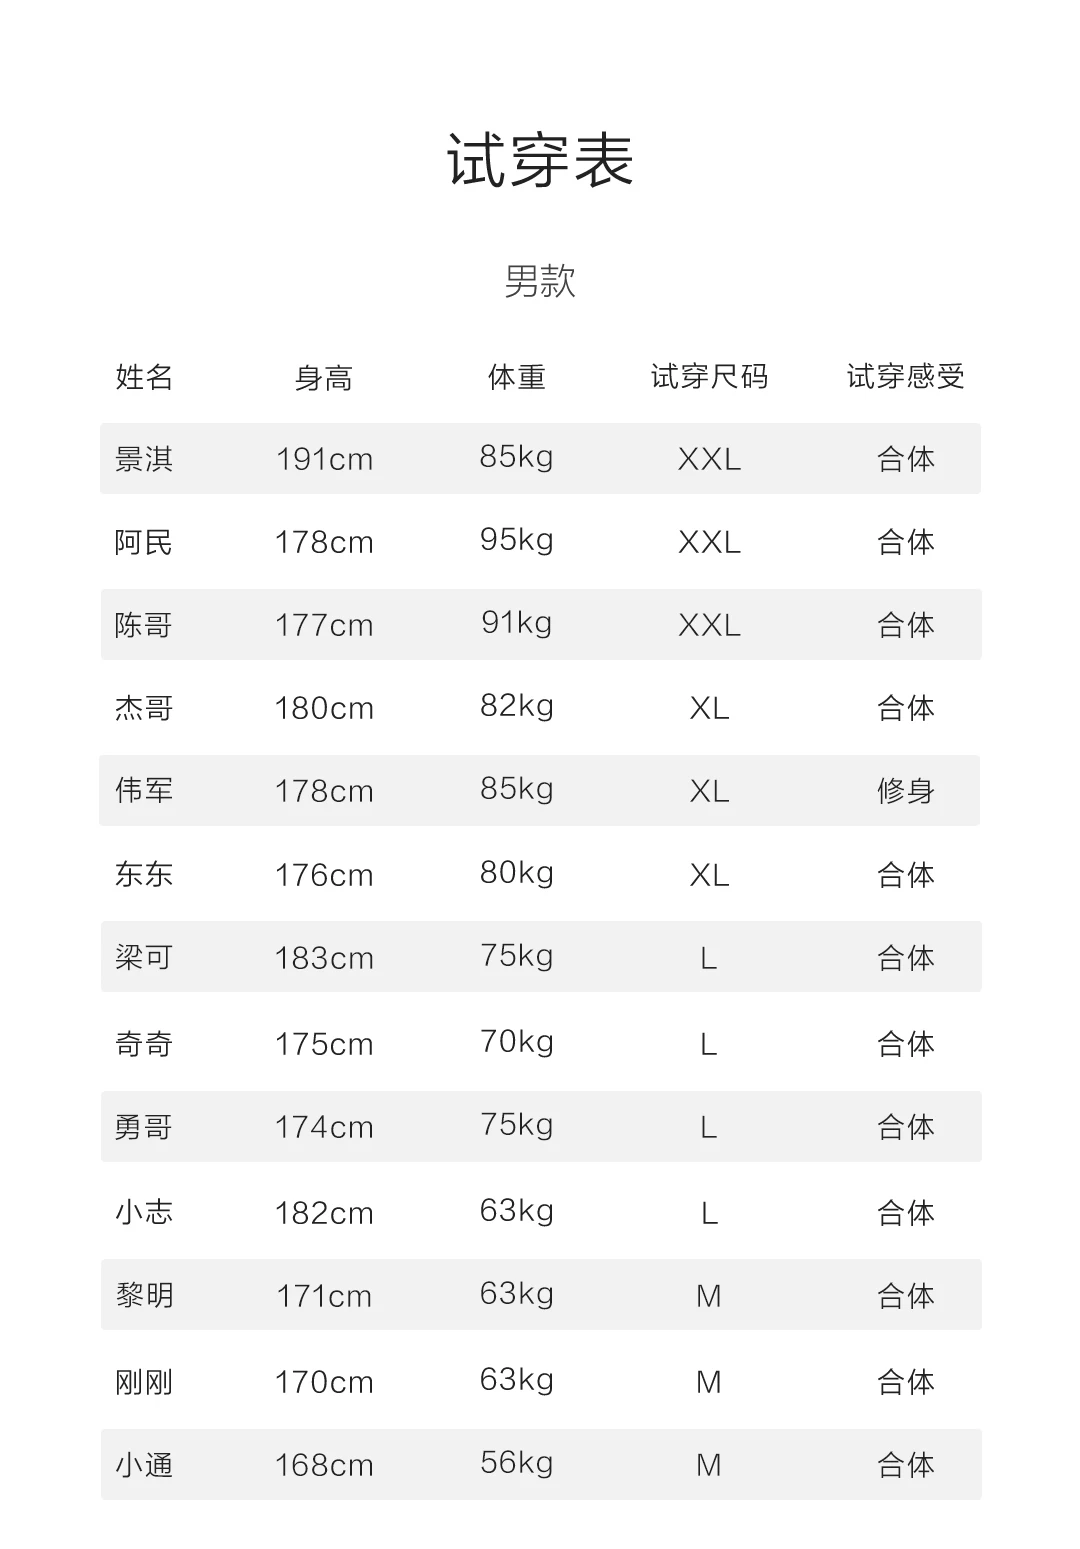 Xiaomi Mijia Youpin хлопковая Базовая комфортное нижнее белье комплект шелковистый и мягкий прочный антистатический невидимая основа